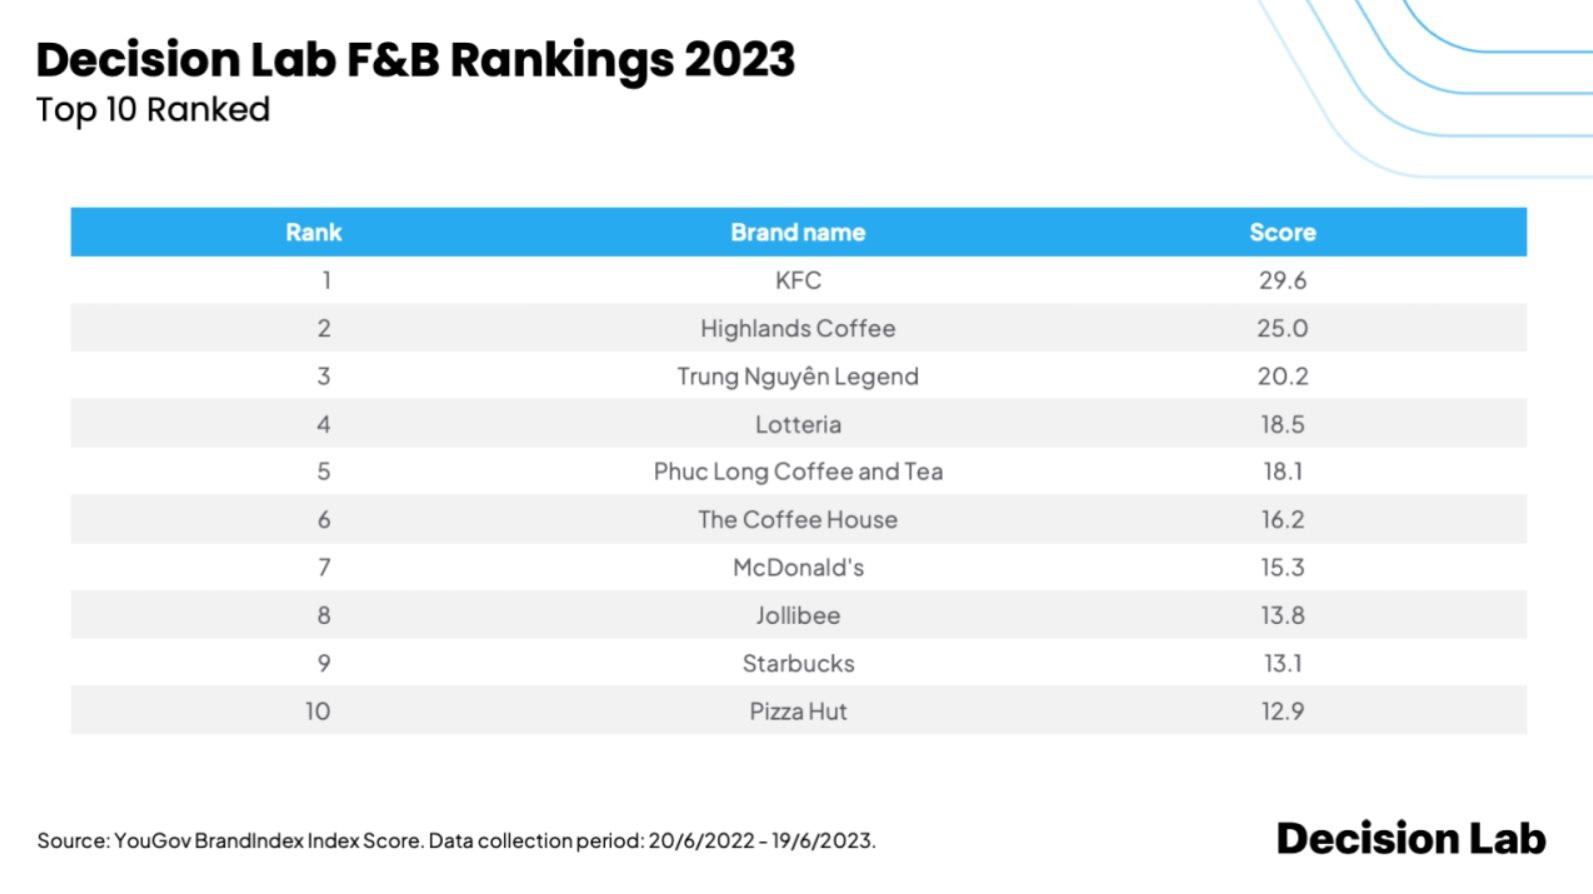 Top 10 thương hiệu F&B tại Việt Nam năm 2023: Highlands Coffee, Trung Nguyên Legend, Phúc Long đều đứng sau một hãng gà rán - Ảnh 2.